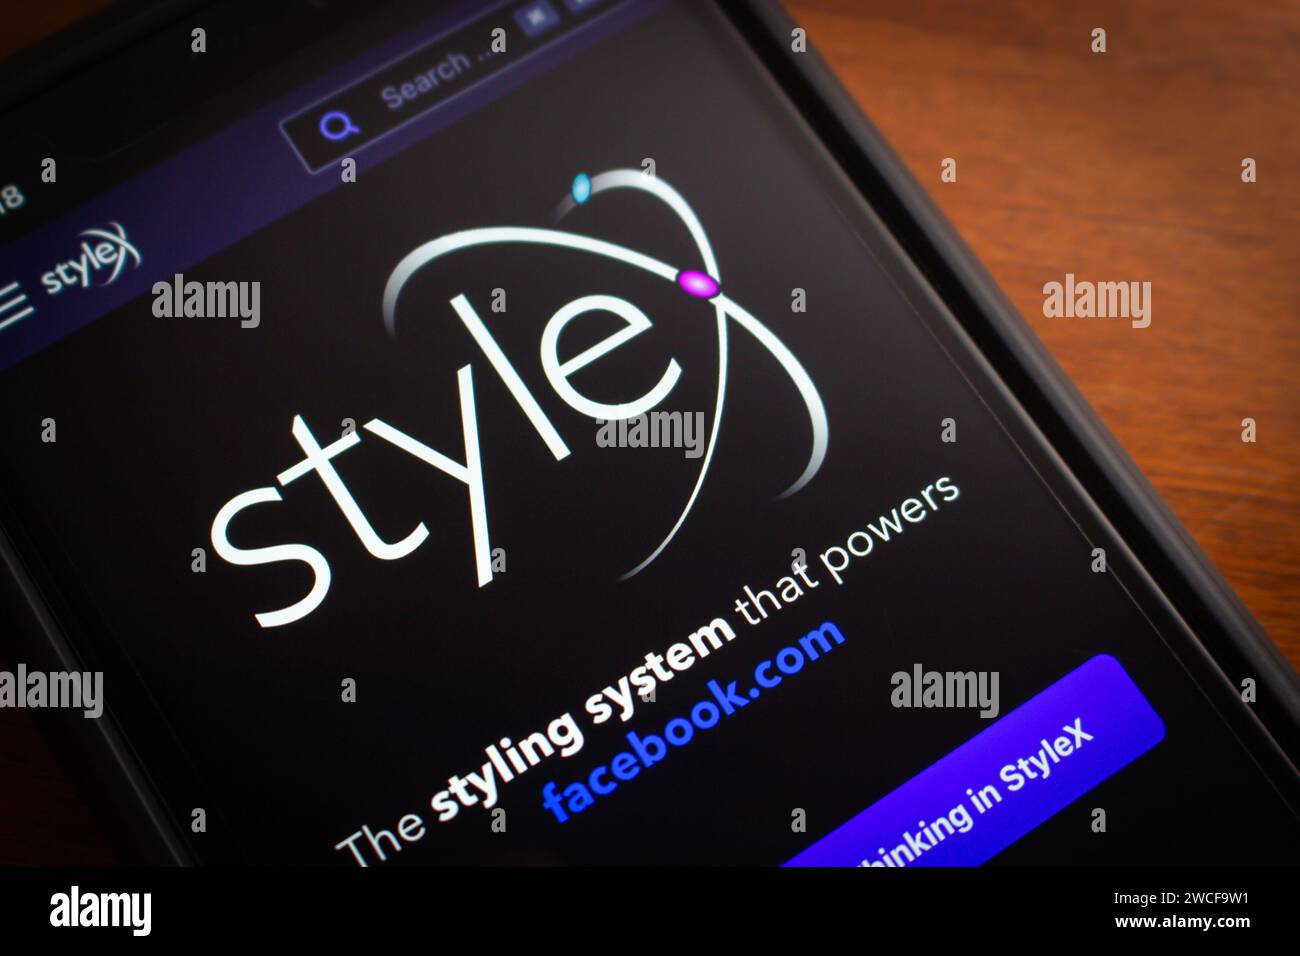 Vancouver, KANADA - 25. Dezember 2023 : StyleX-Website auf dem iPhone. StyleX ist ein moderner JavaScript-basierter Compiler für Web-Apps, der von Meta entwickelt wurde Stockfoto